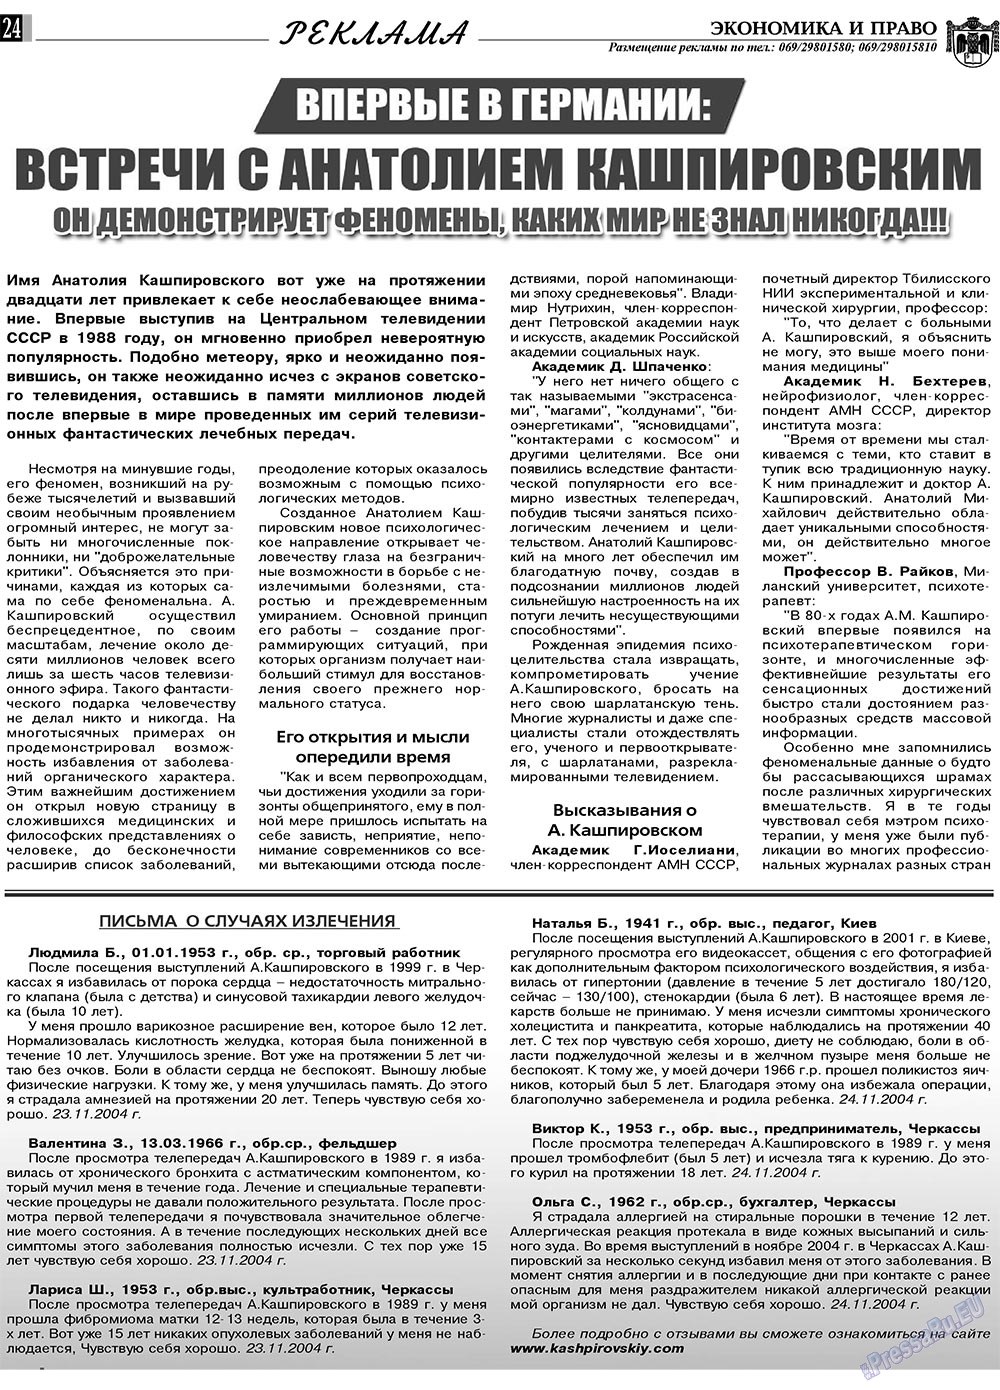 Экономика и право, газета. 2010 №2 стр.24